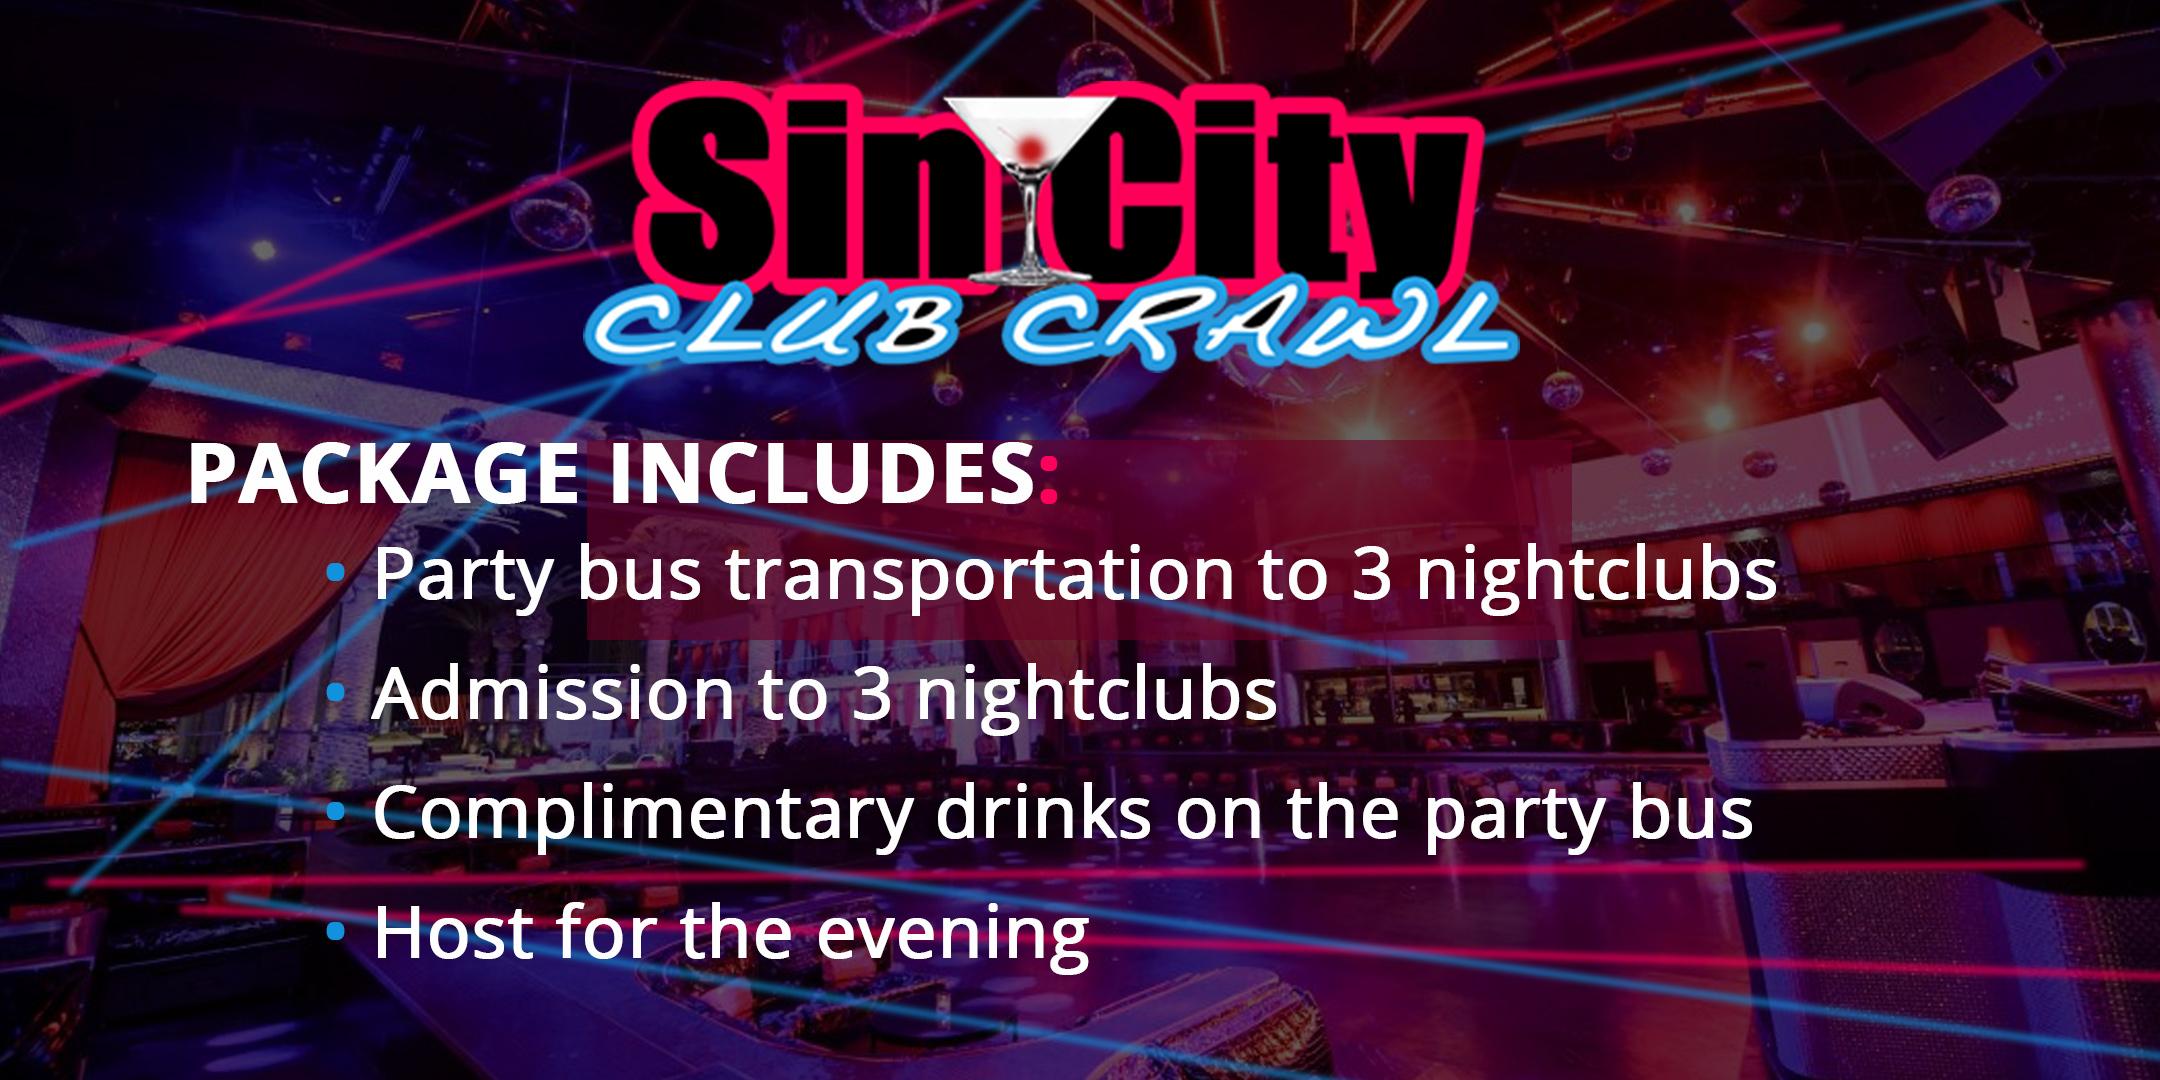 "Best Party Bus Tours Las Vegas"